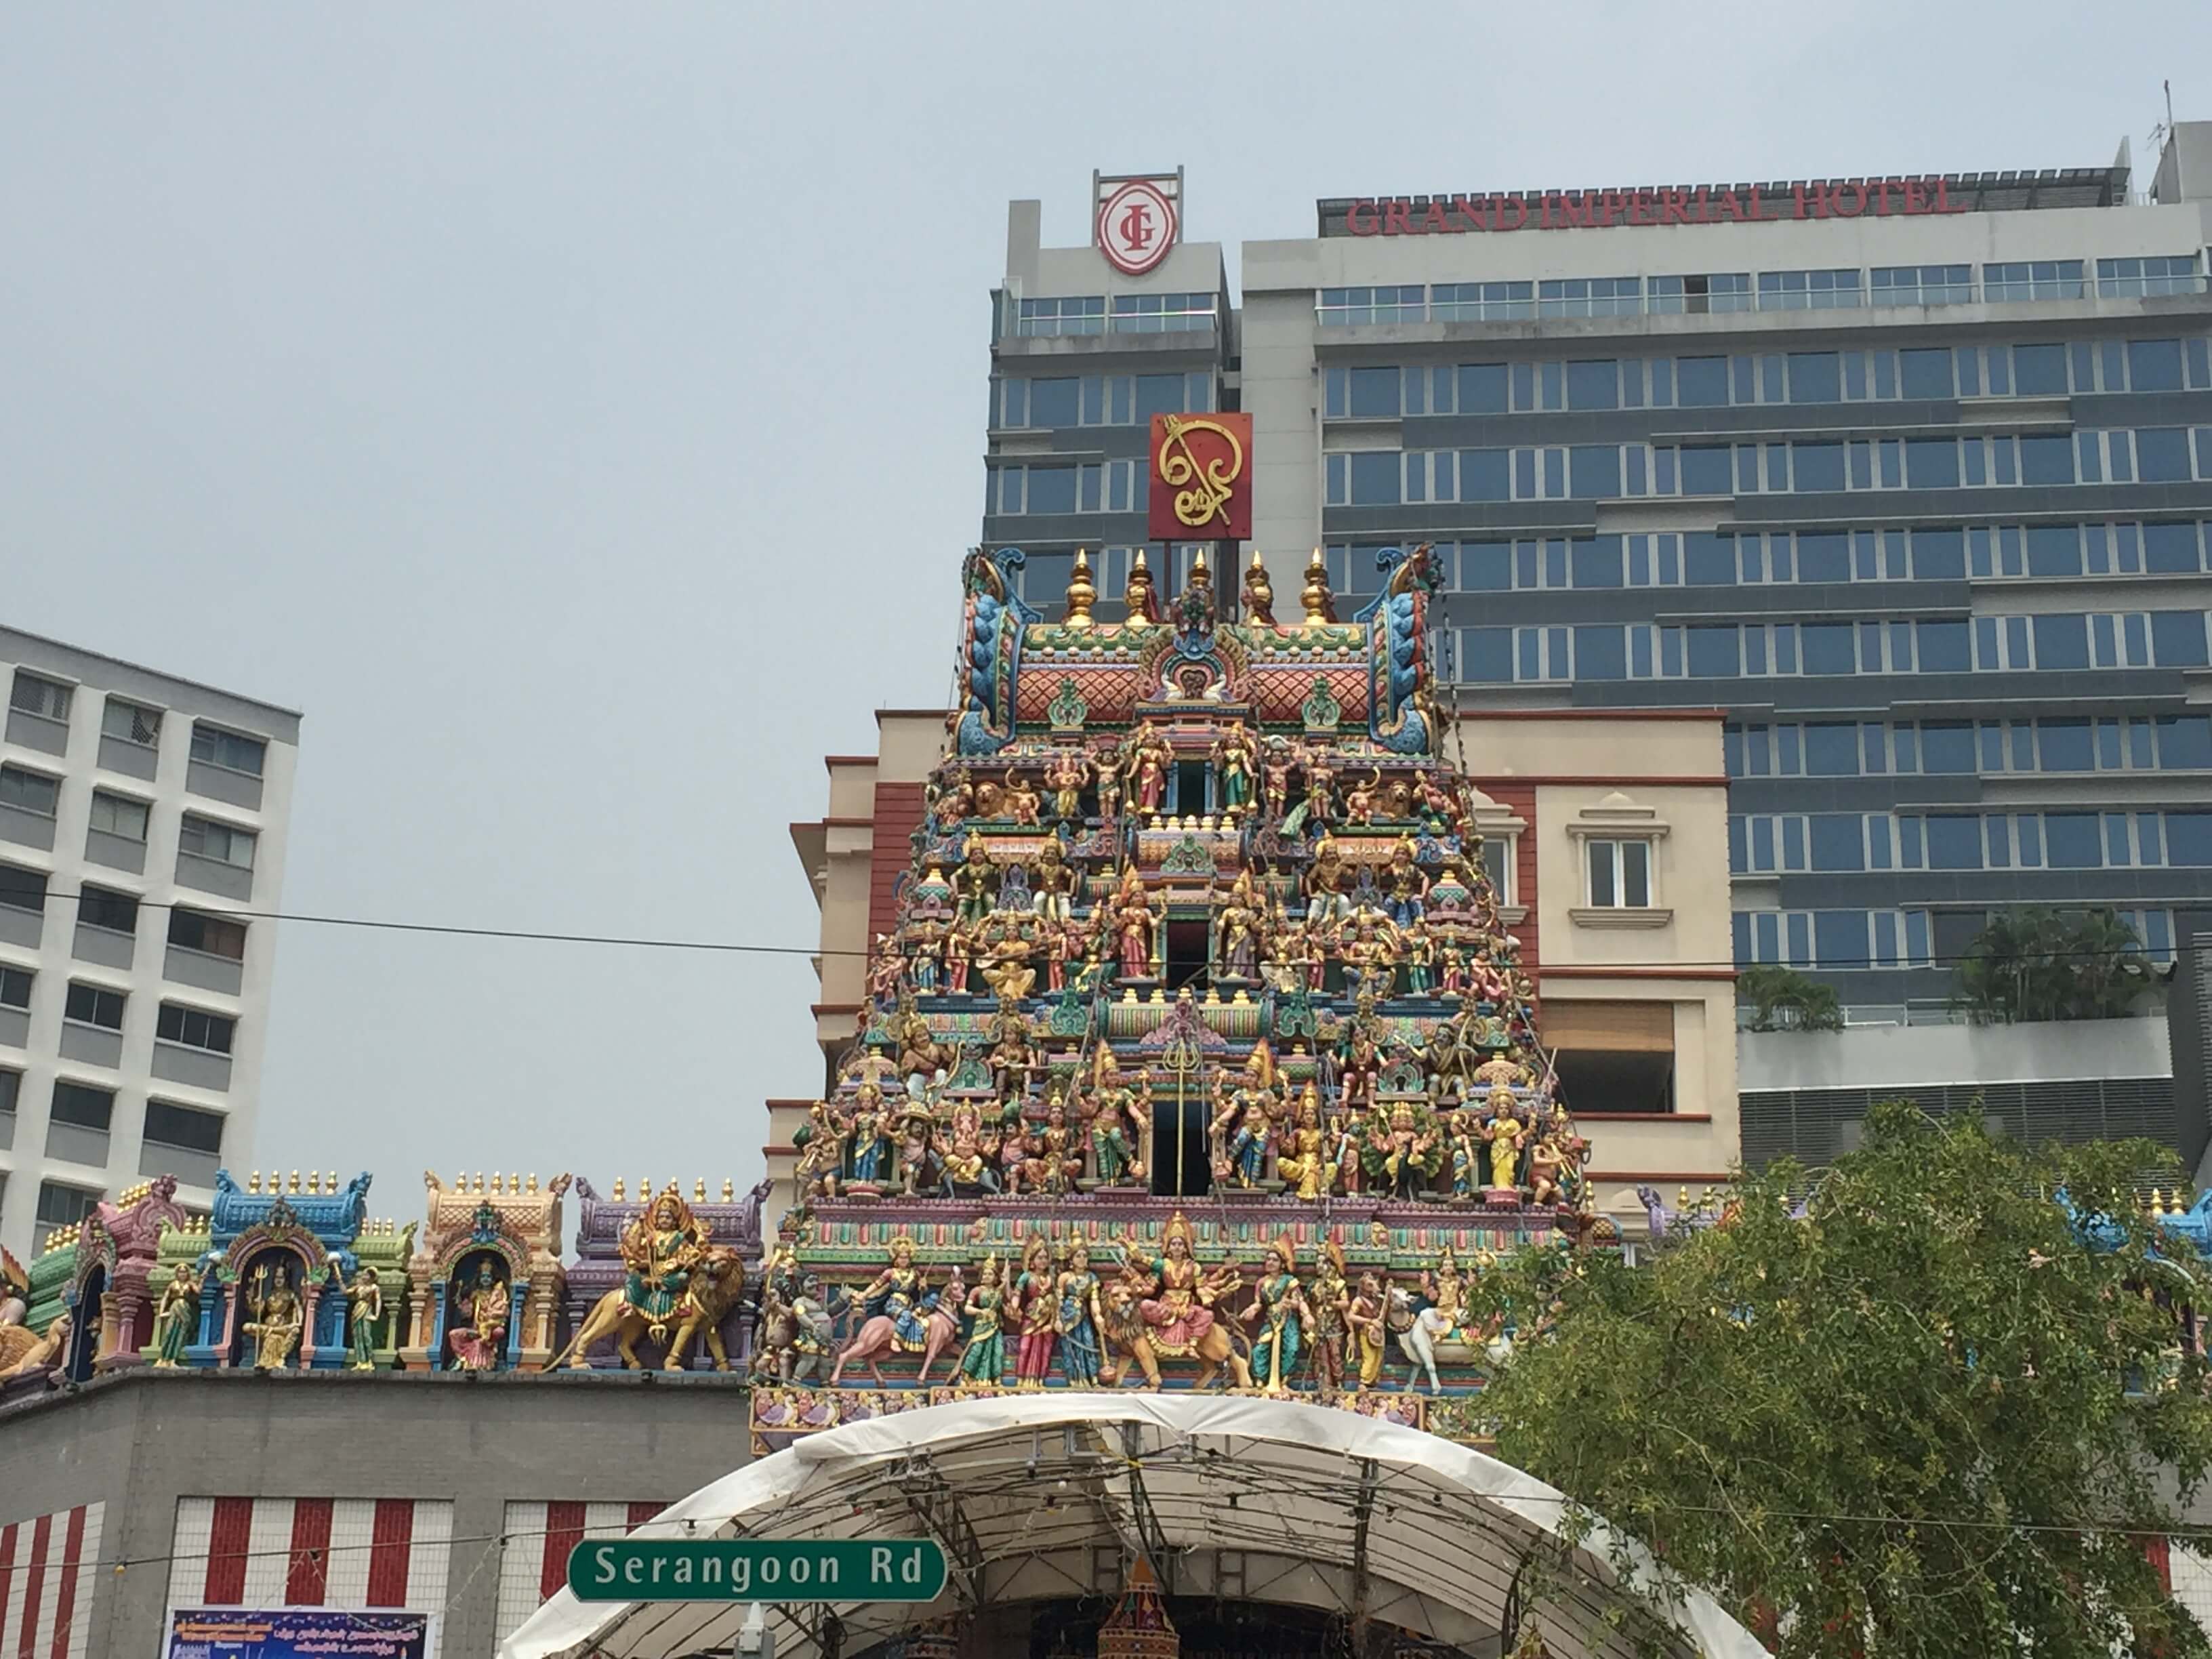 Hindu temple on Serangoon